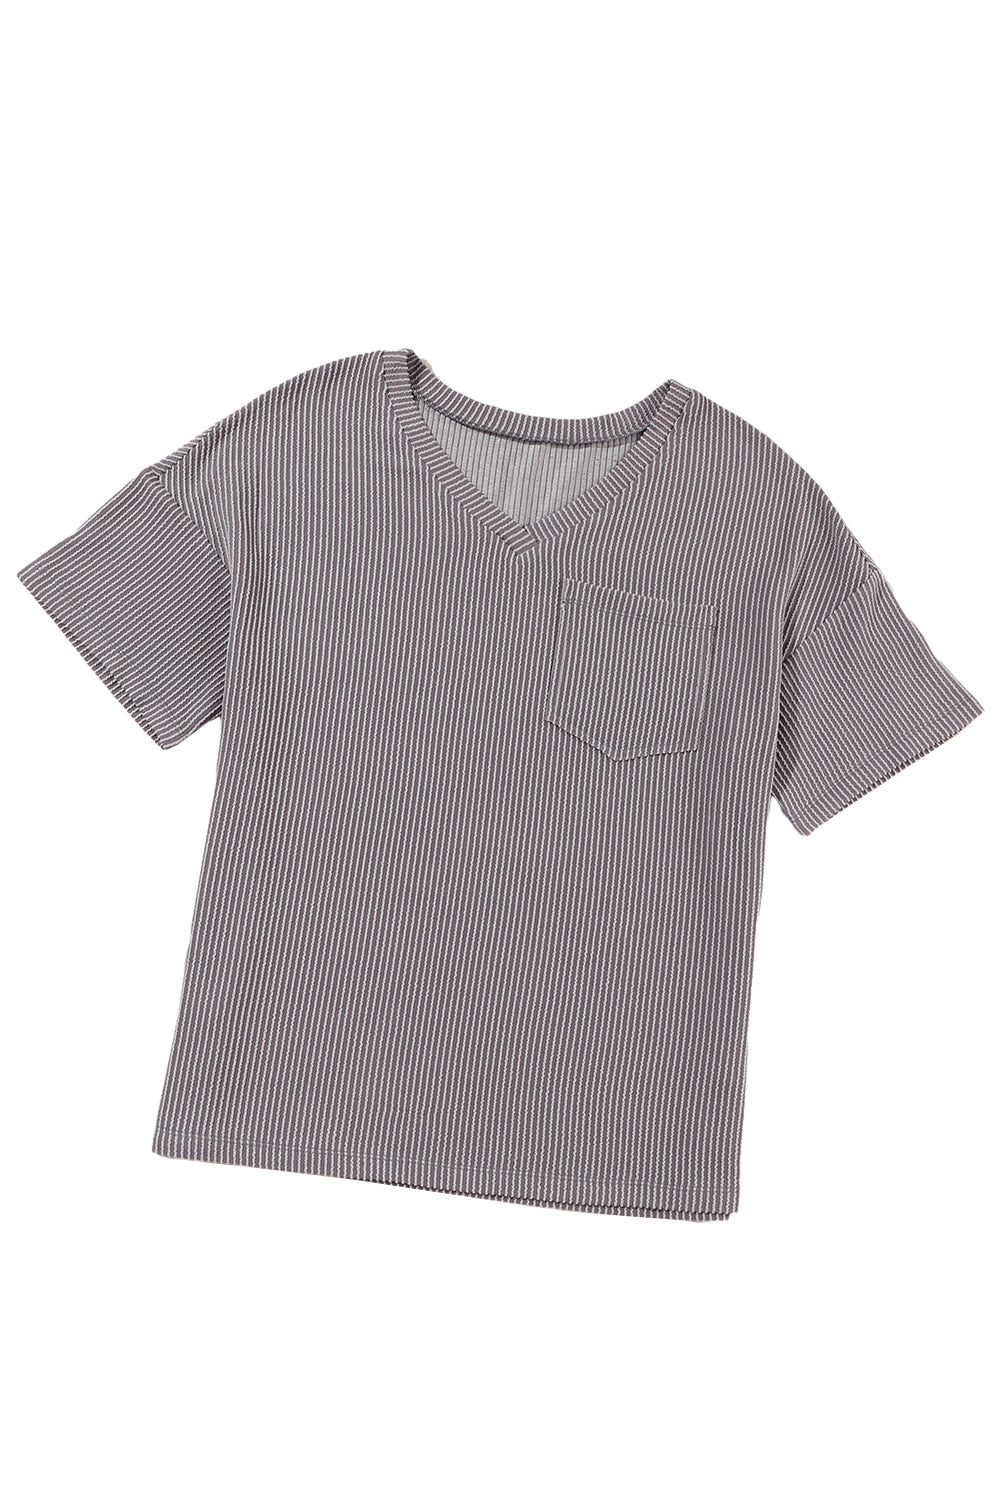 Hellgraues, schnurgebundenes, lockeres T-Shirt mit V-Ausschnitt und Brusttasche